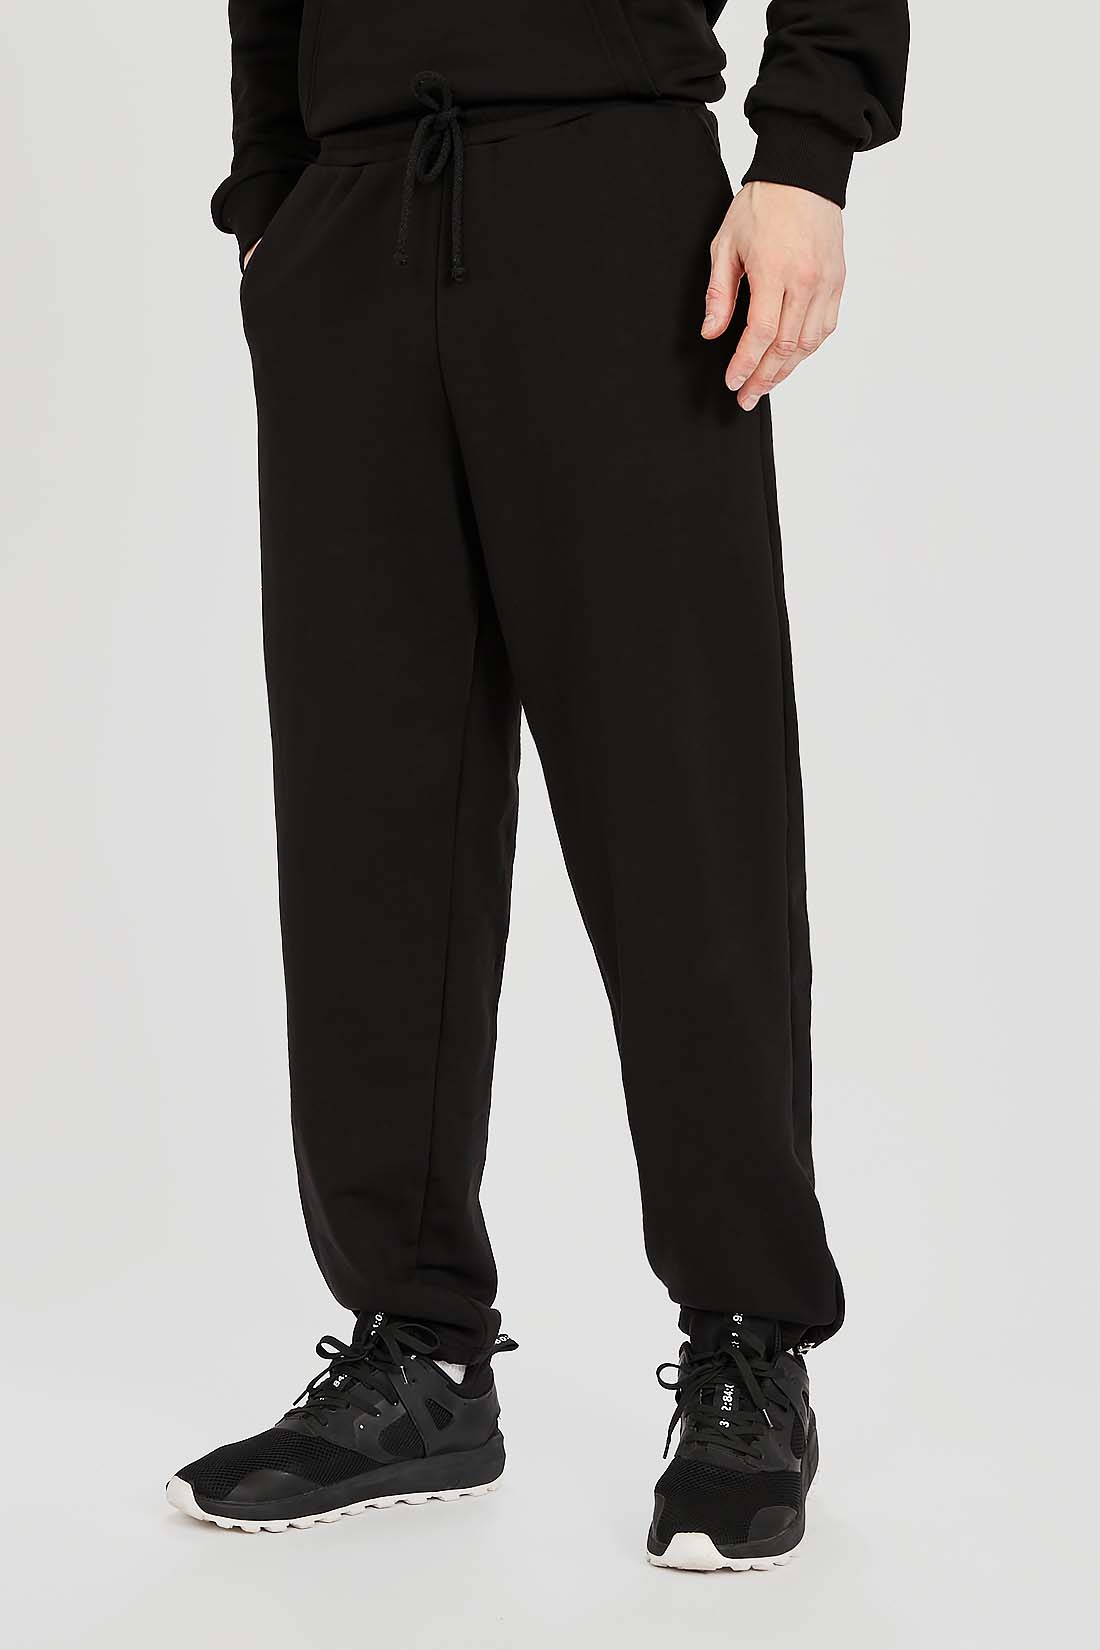 Спортивные брюки мужские Baon B7922023 черные XL